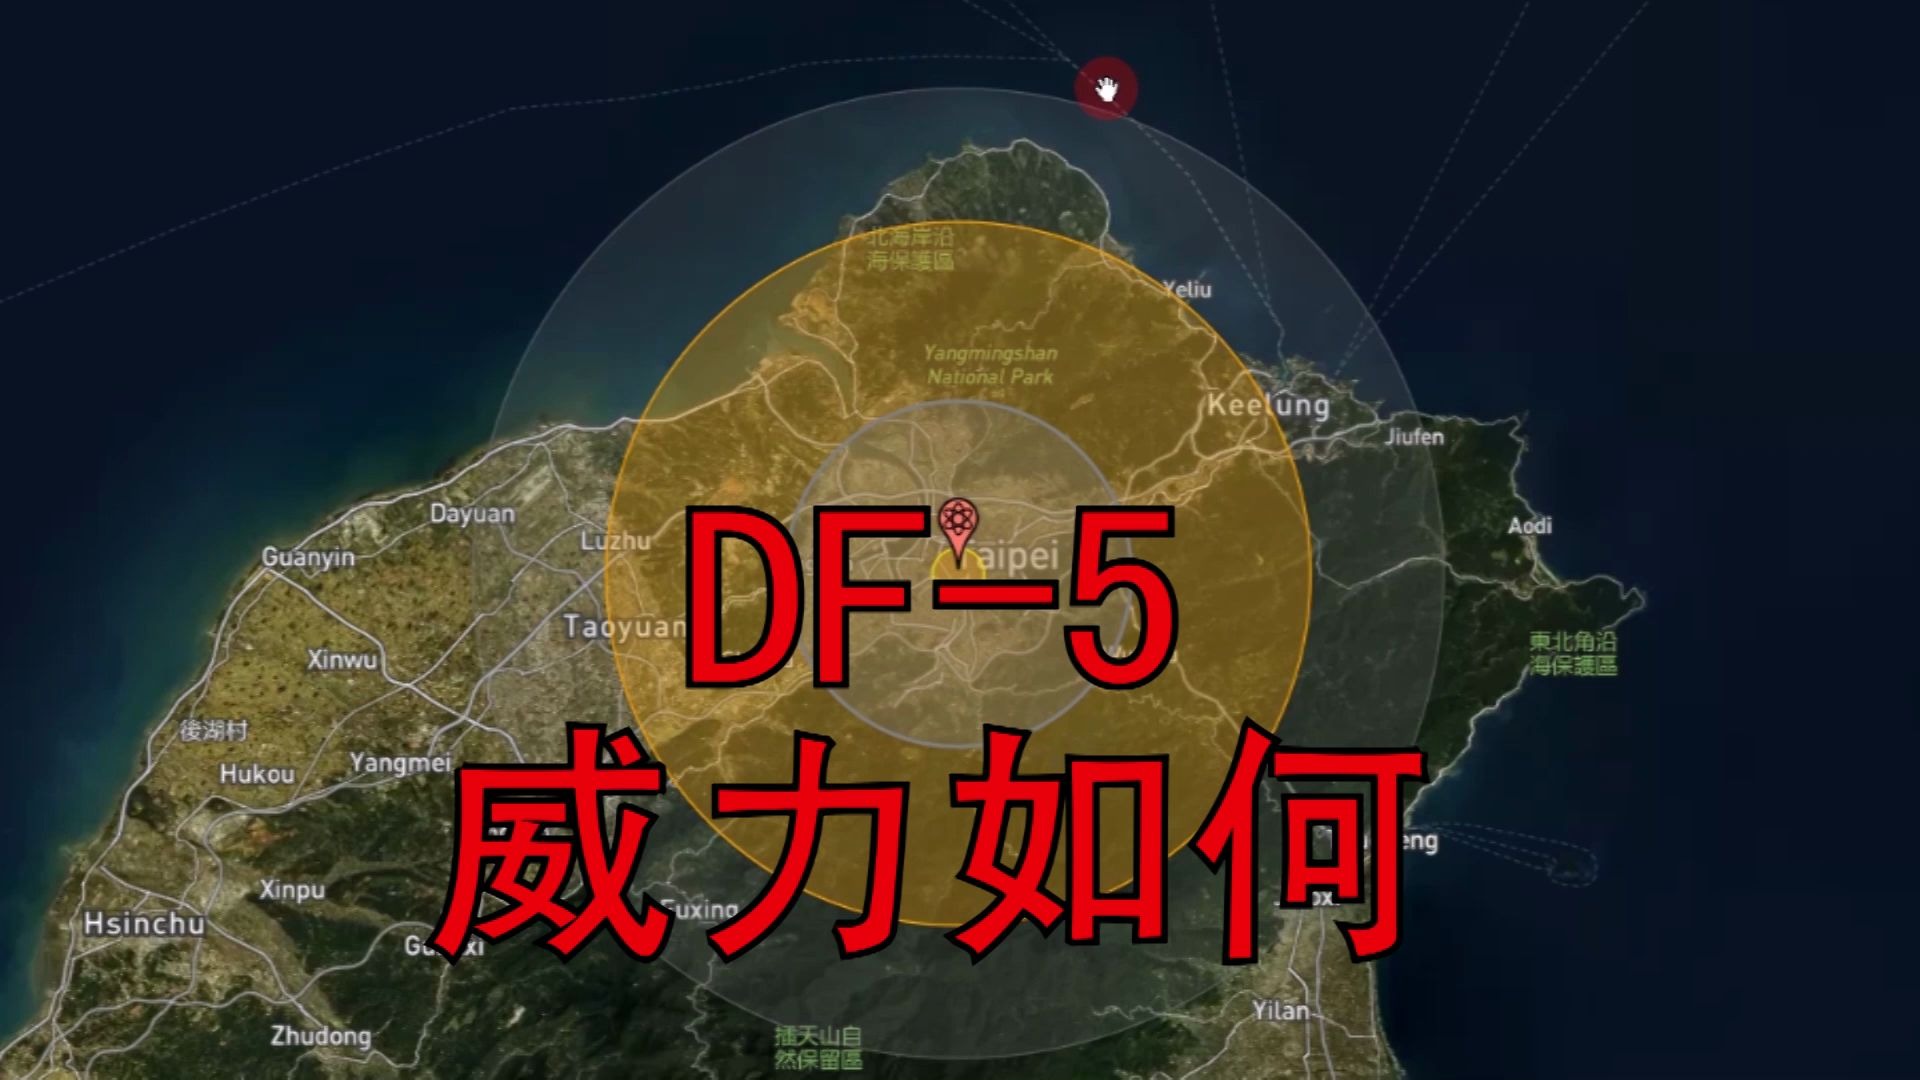 DF-5威力如何？半径1.84公里内蒸发任何东西，12公里内无完整建筑